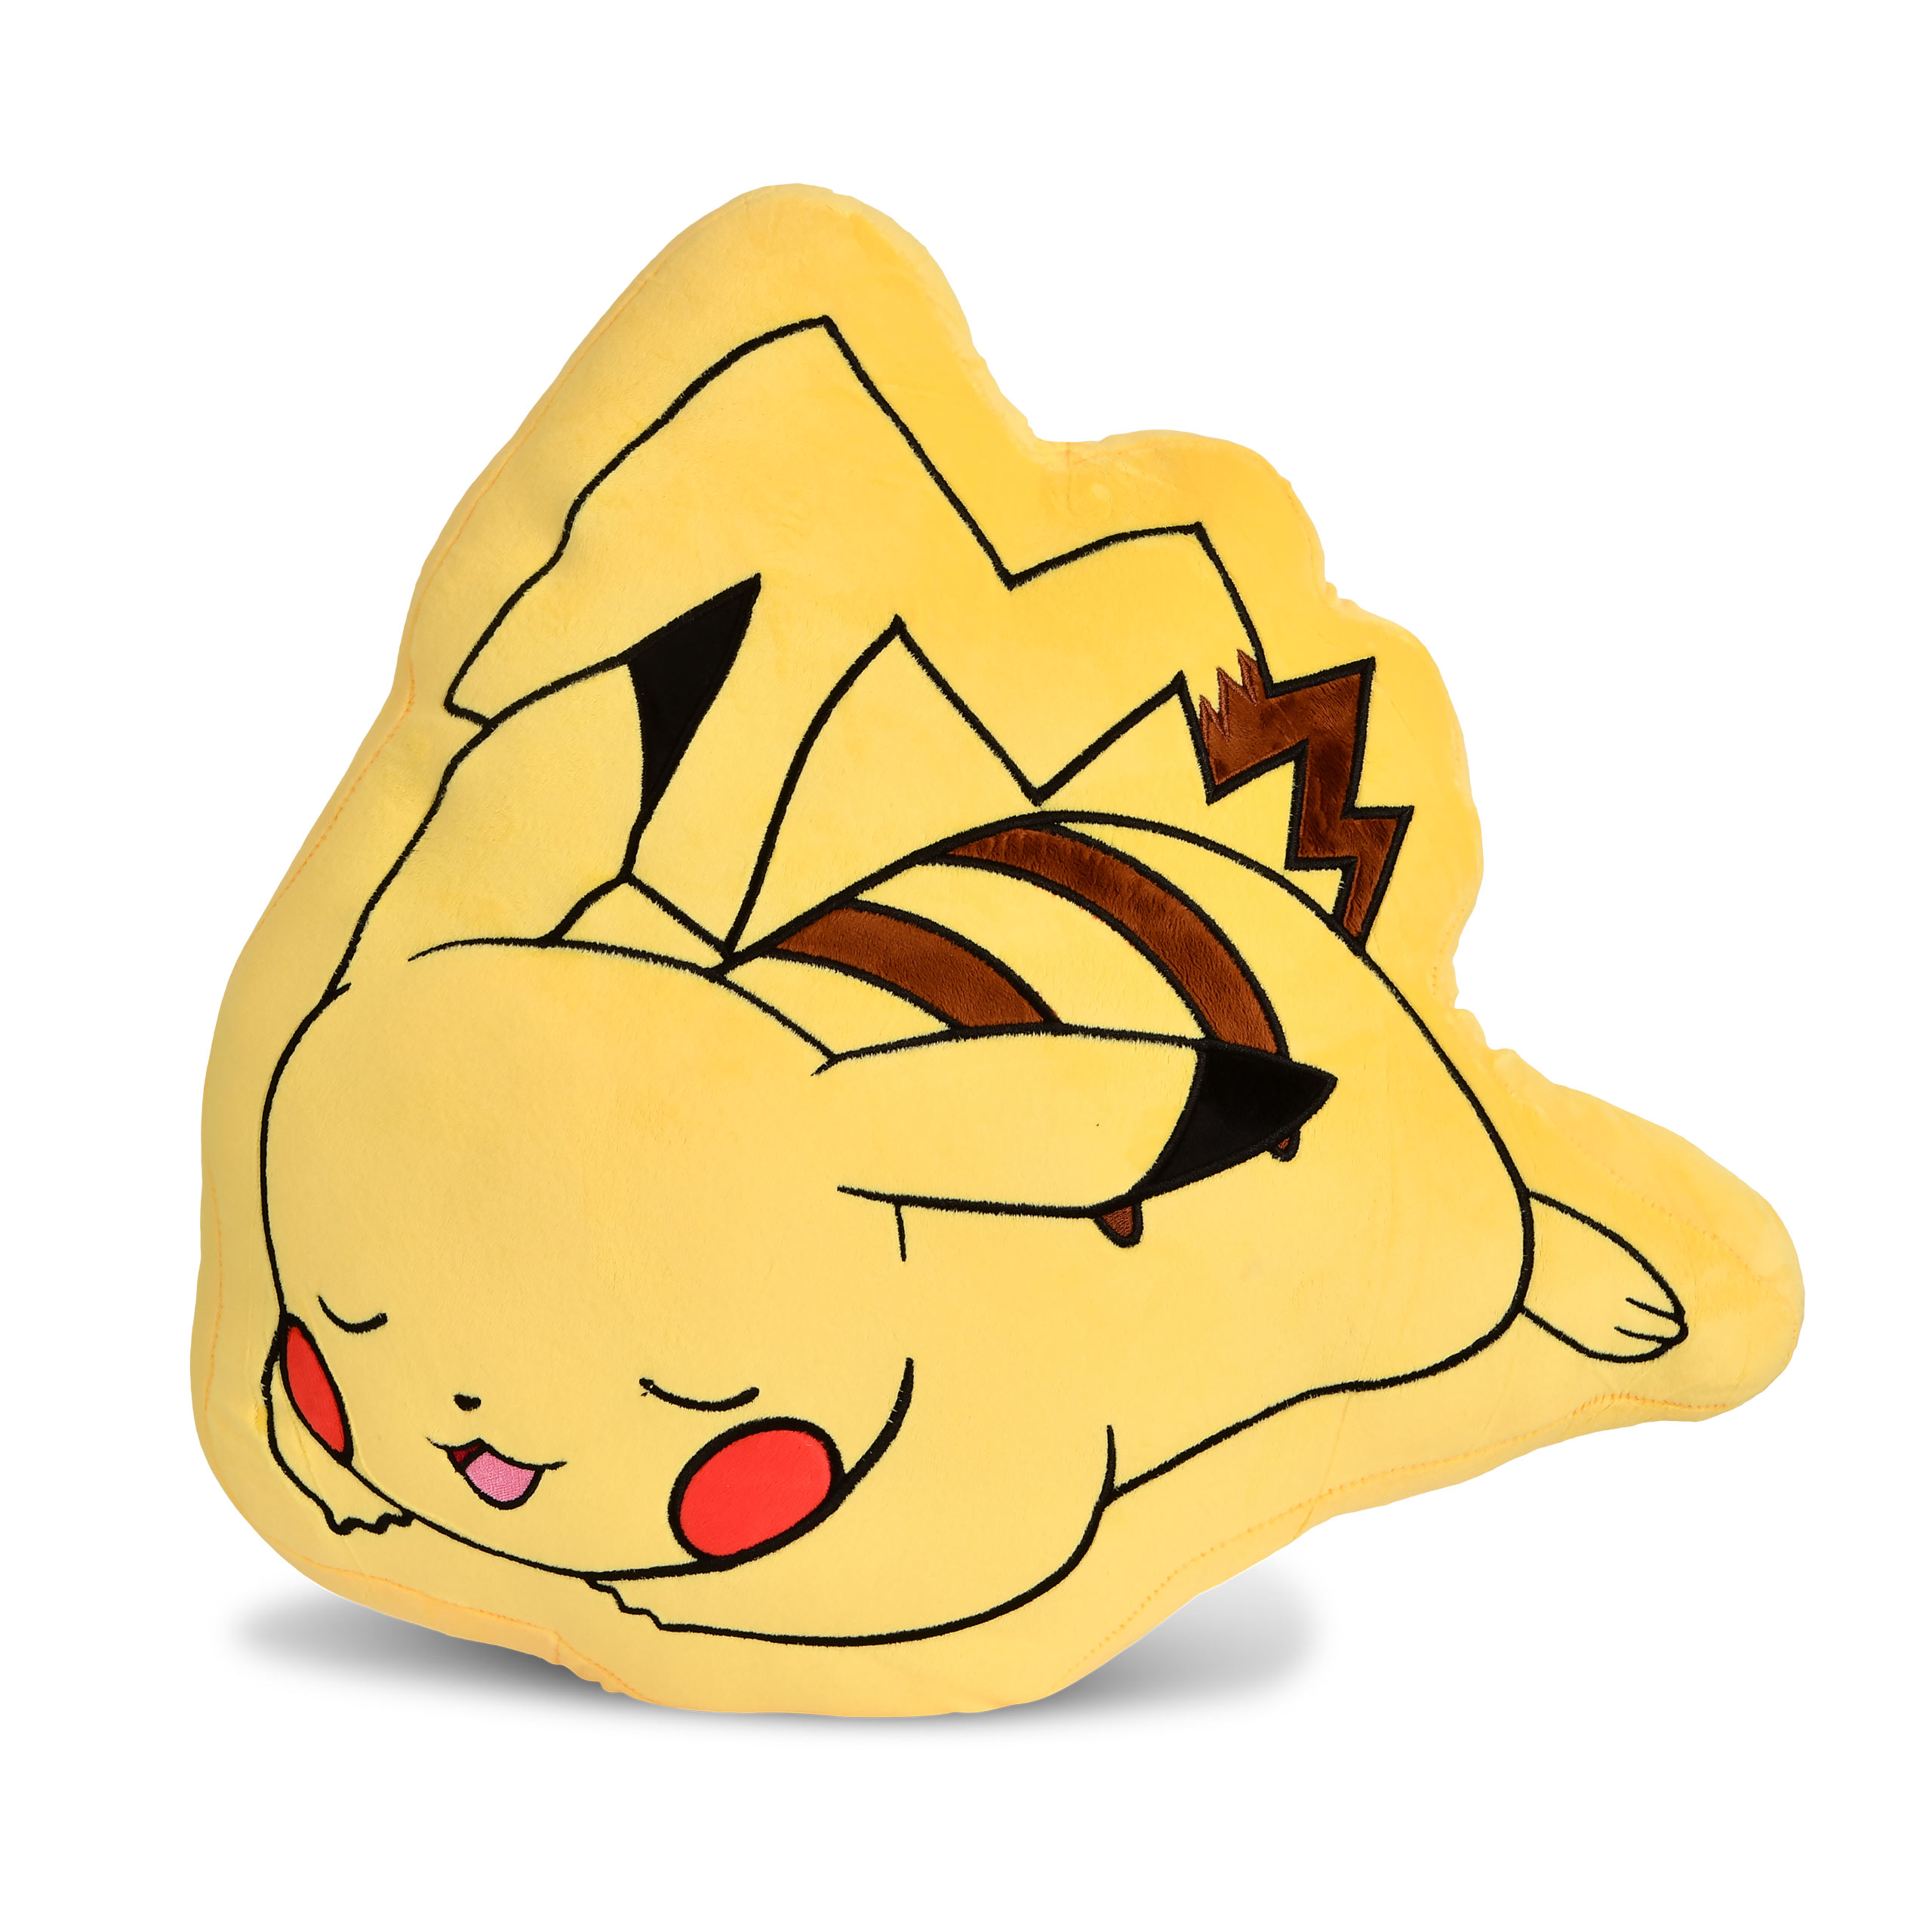 Einbetten #Einbetten  Pikachu, Pokemon, Cute pikachu